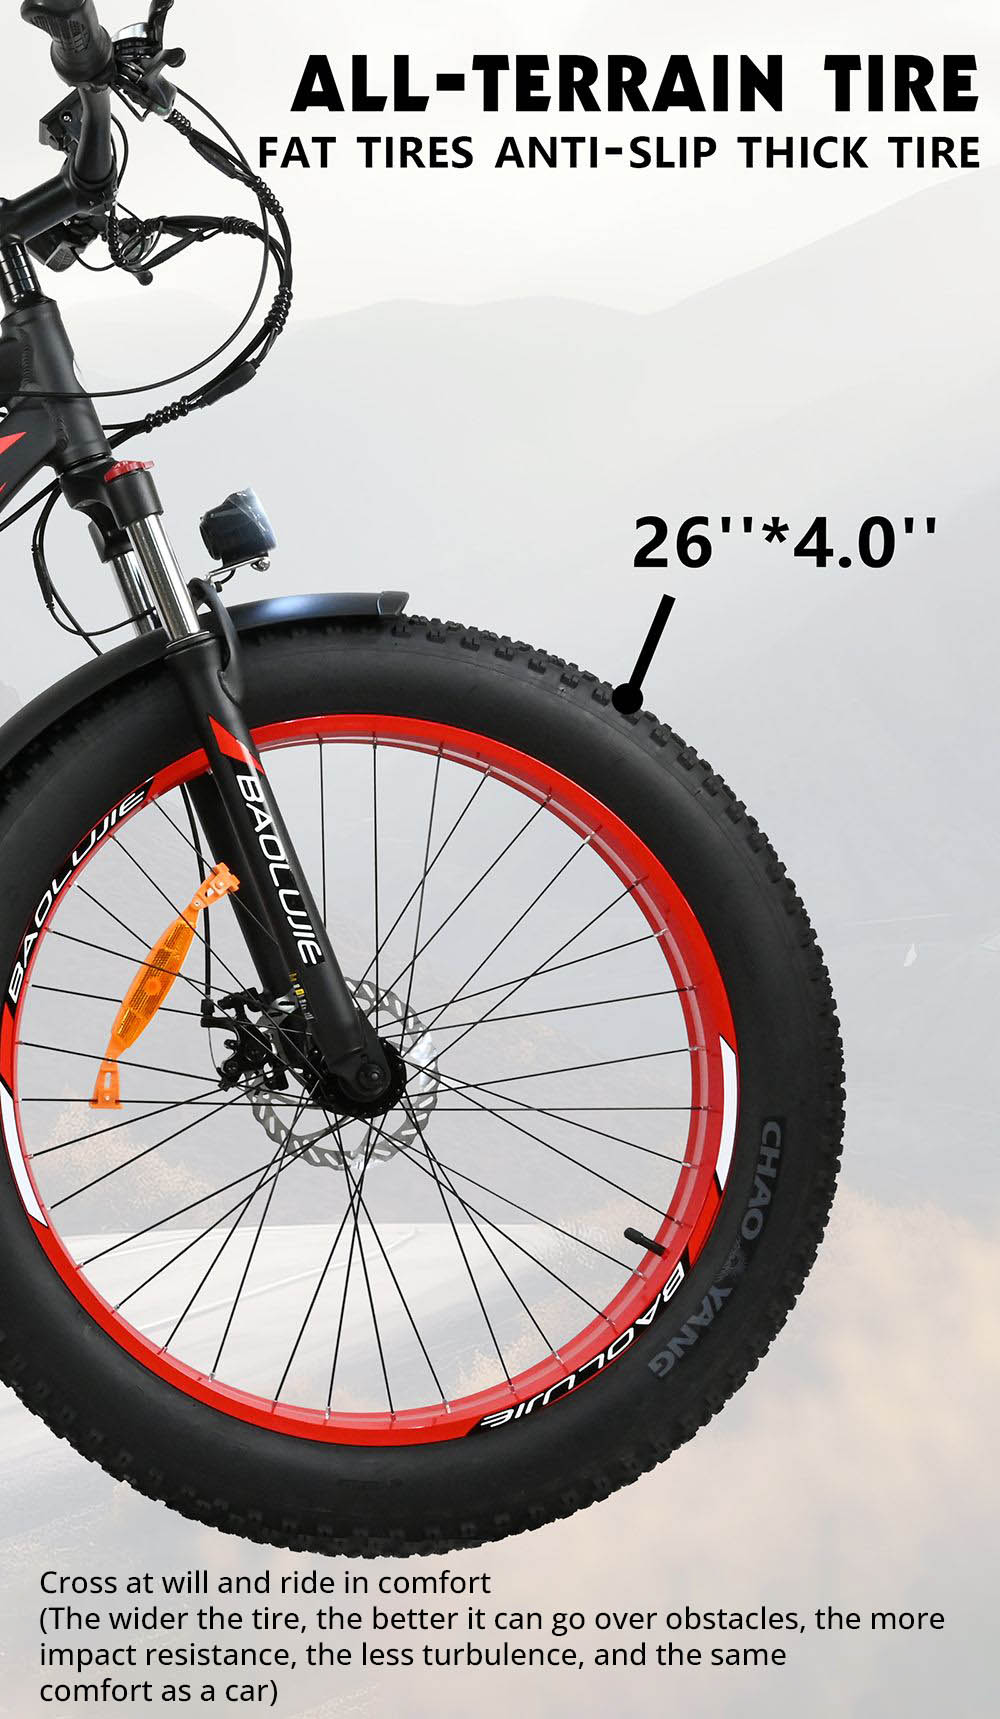 BAOLUJIE DP2619 elektromos kerékpár, 26 * 4.0 hüvelykes Fat Tire 750 W motor 48 V 13 Ah Akkumulátor 45 km/h Max sebesség 45 km Maximális hatótáv SHIMANO 7 sebességes LCD kijelző - szürke